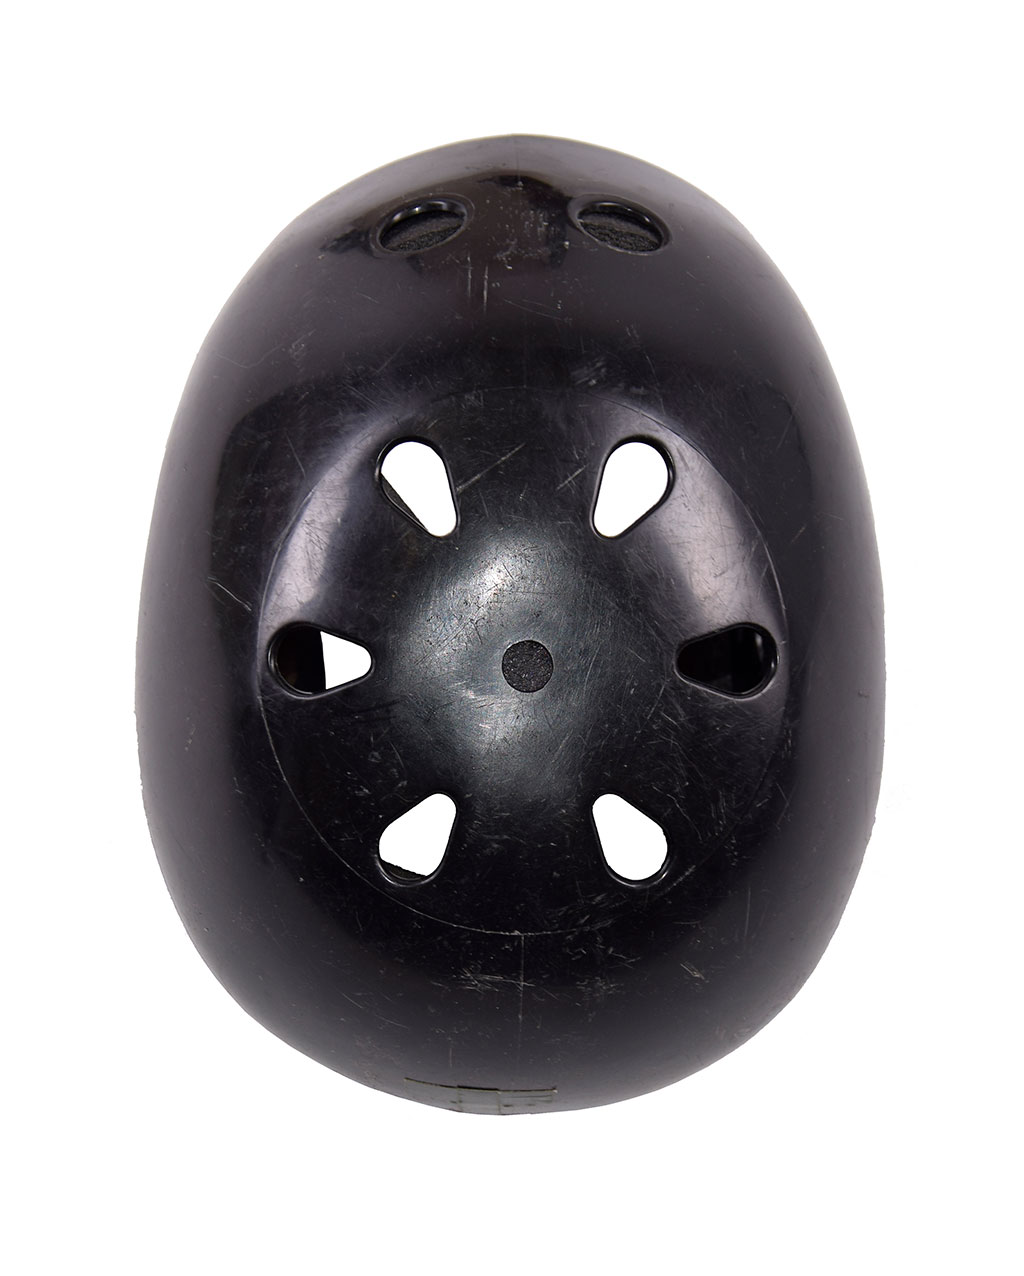 Шлем альпинистский пластик black б/у Голландия